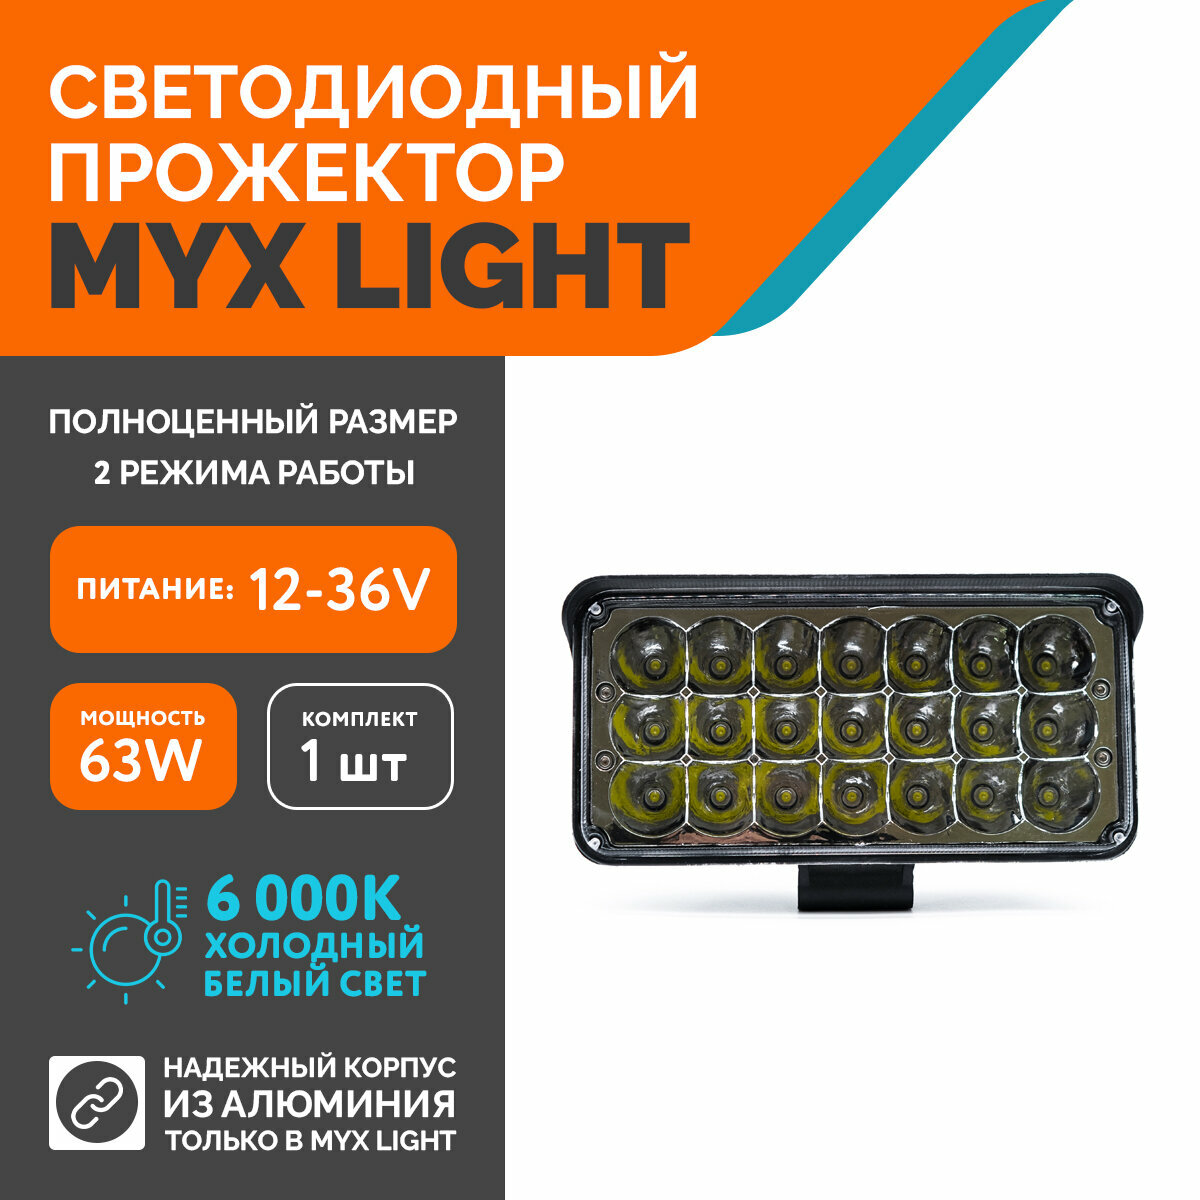 Светодиодная противотуманная фара для авто MYX-Light 12-36V мощность 63W 6000K прожектор дневные ходовые огни для легковых и грузовых авто джипов квадроциклов 1шт